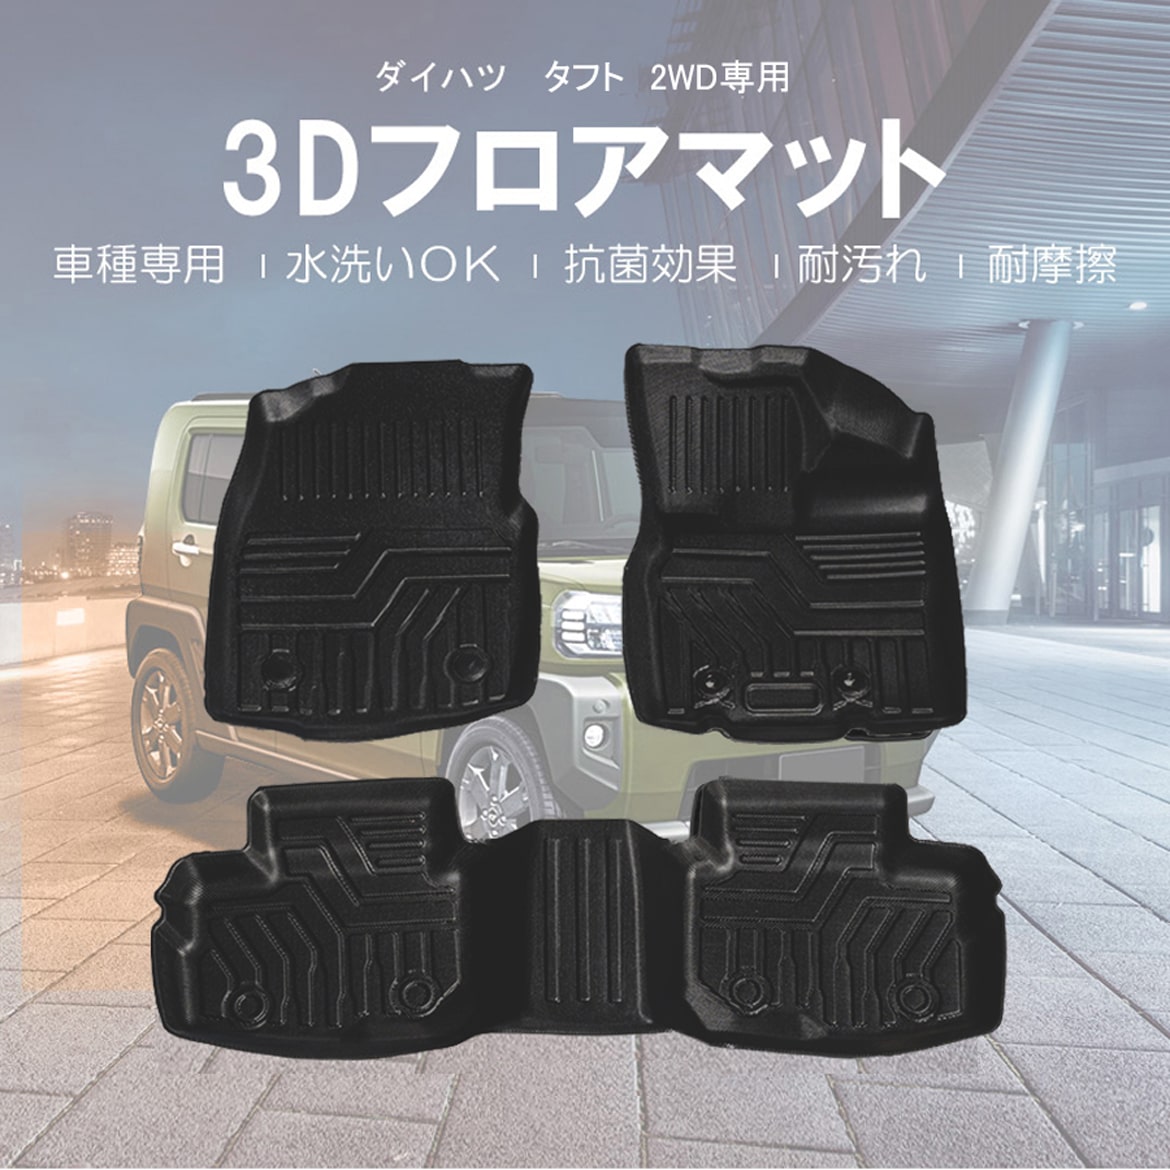 11/25限定 5%OFF ☆ダイハツ タフト TAFT LA900S (2WD車用) 3D フロア